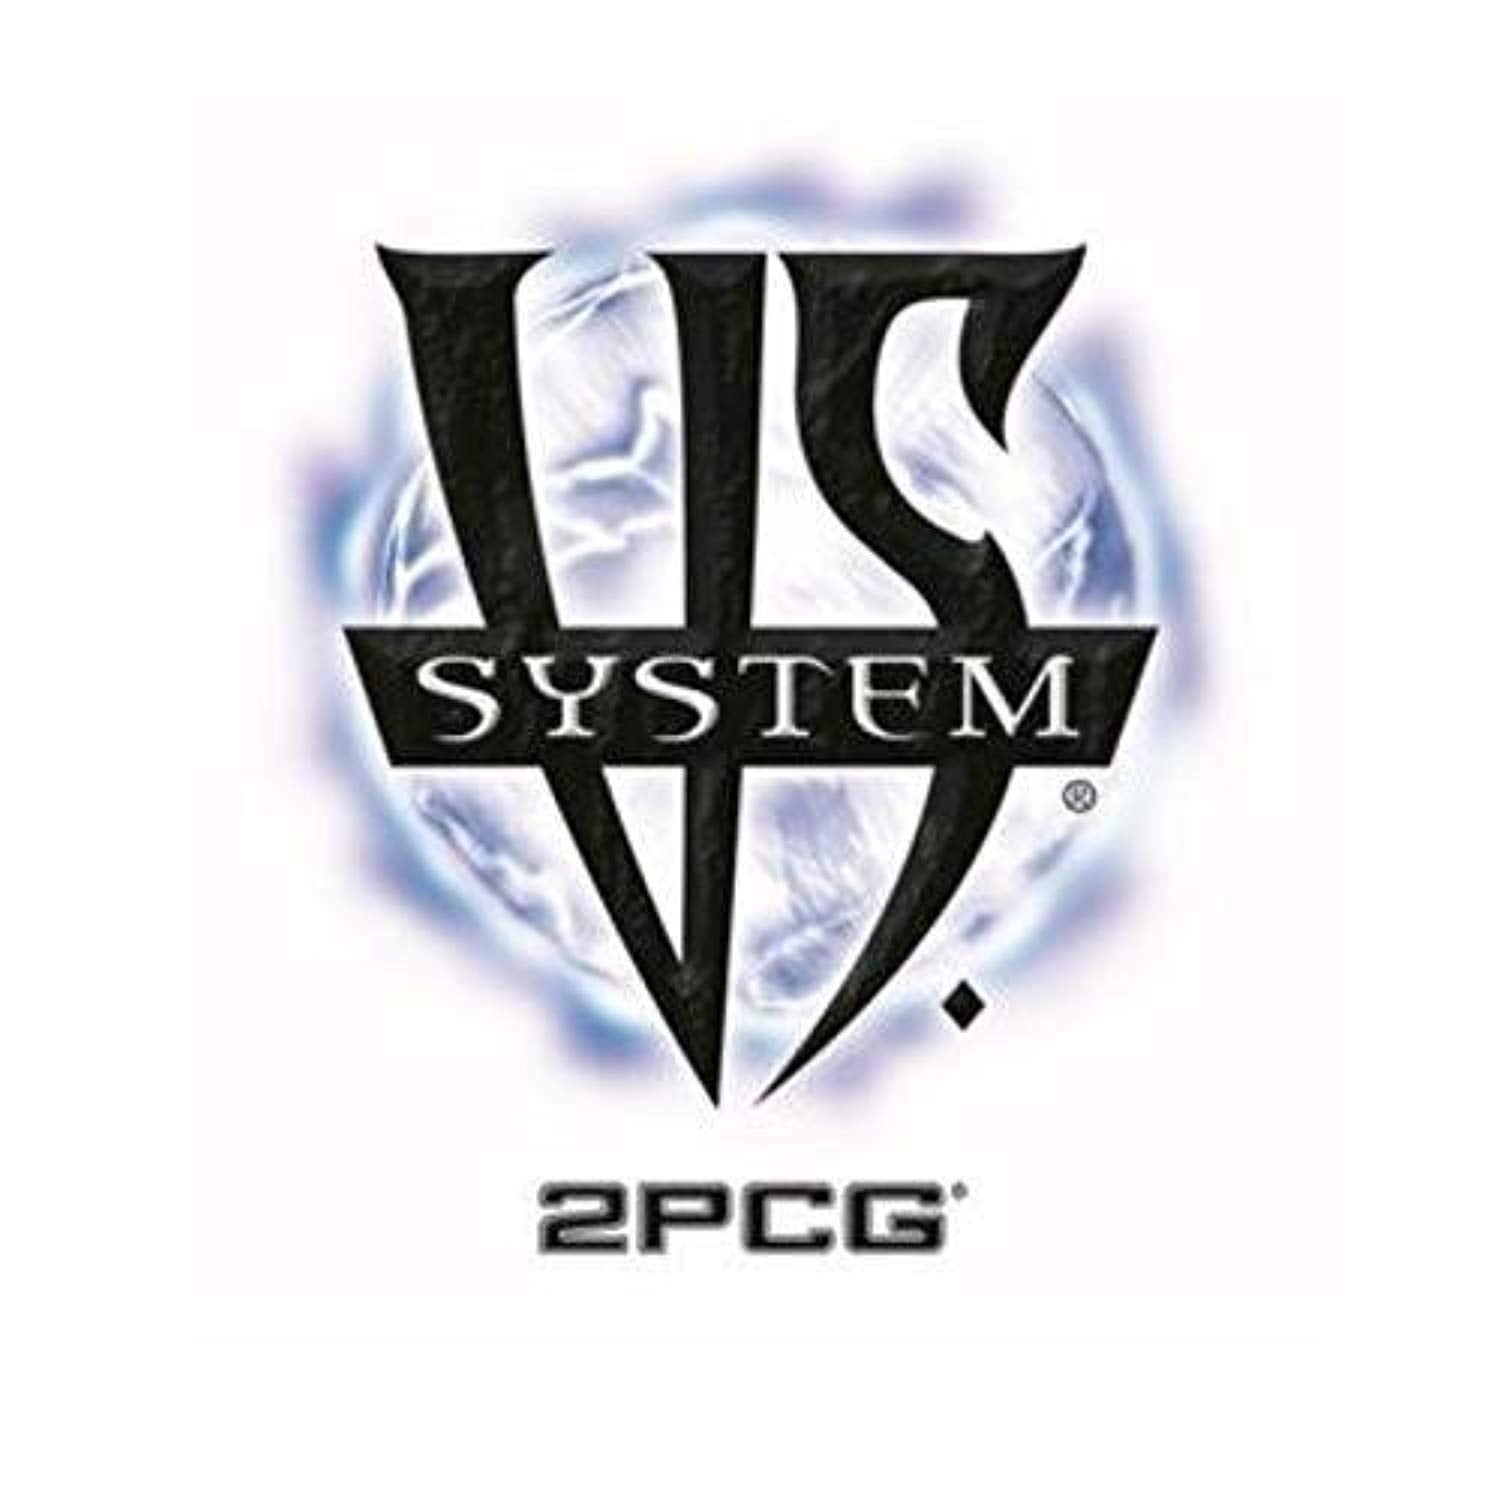 多様な System? VS 90541 アメリカ 英語 ボードゲーム 2PCG?: Syndicate Sinister ボードゲーム -  www.woodland-living.com